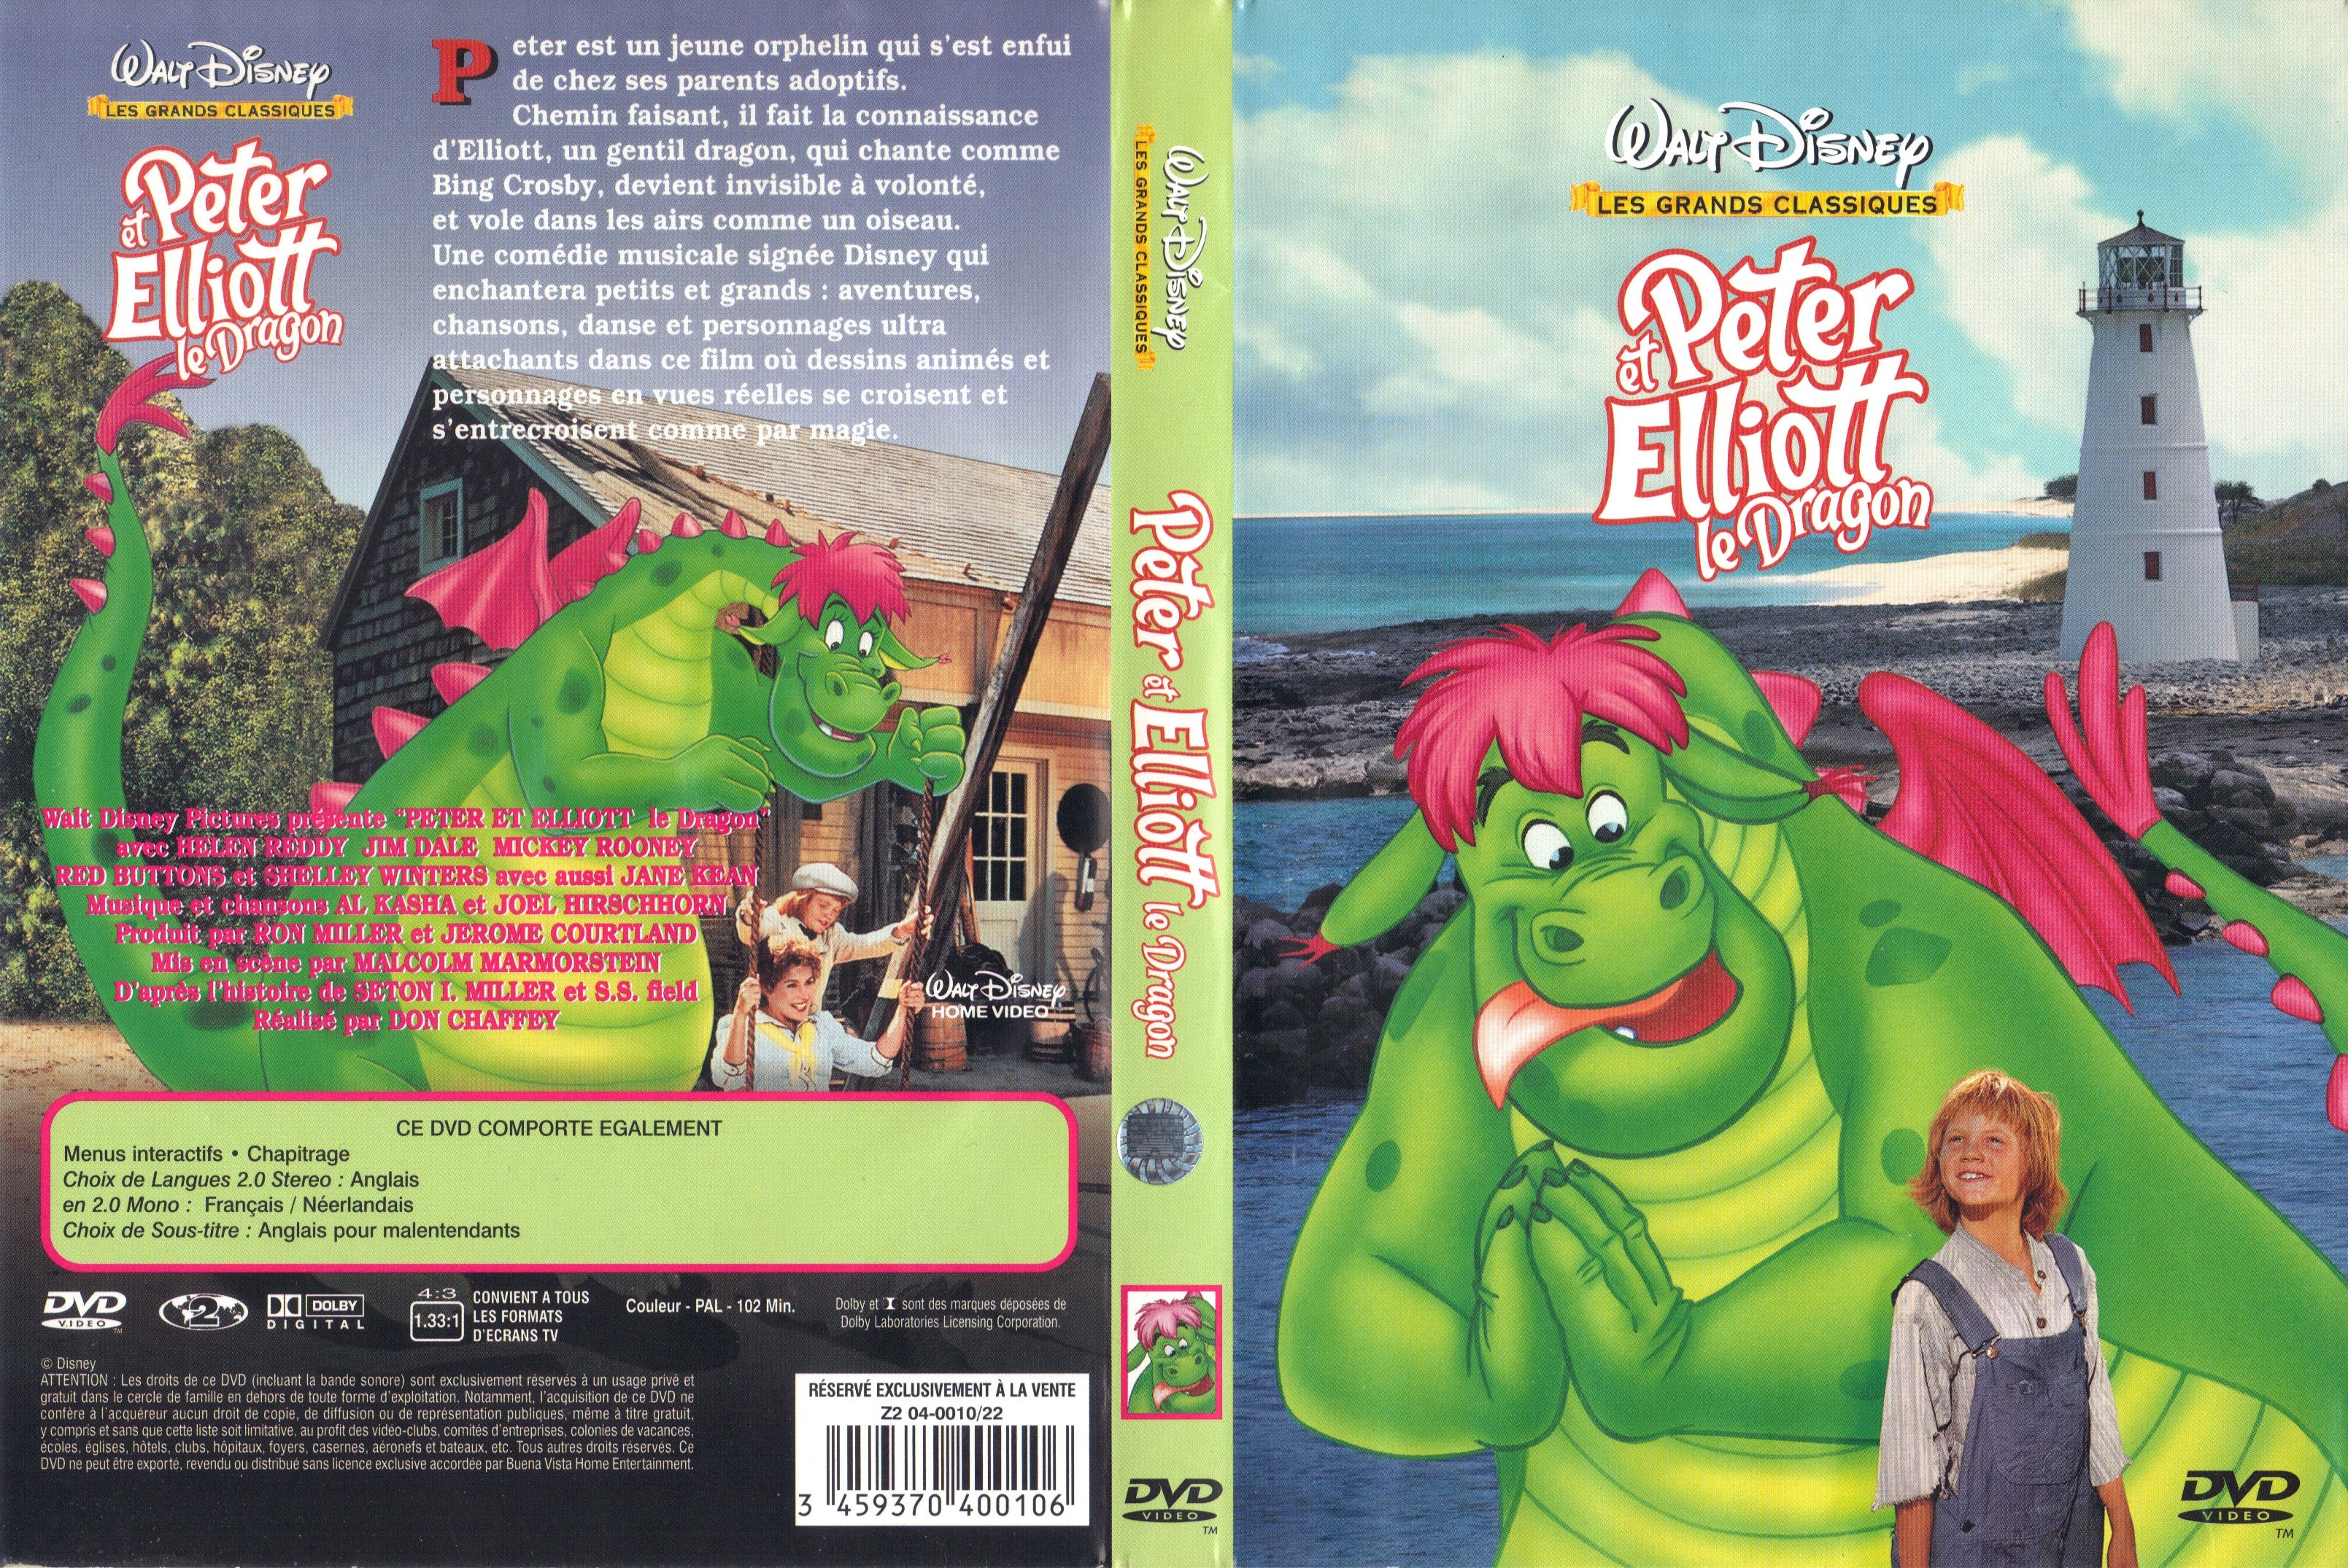 Jaquette DVD Peter et Elliott le dragon v2